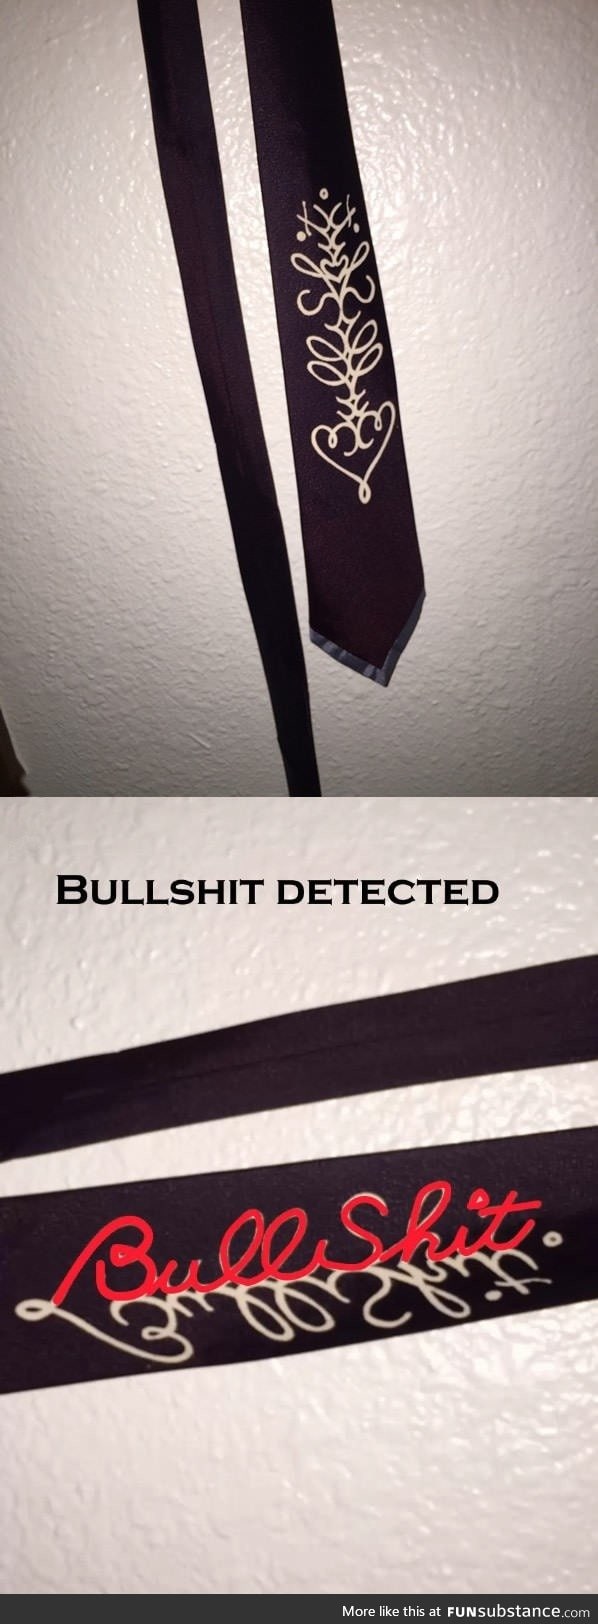 Bullshit detected